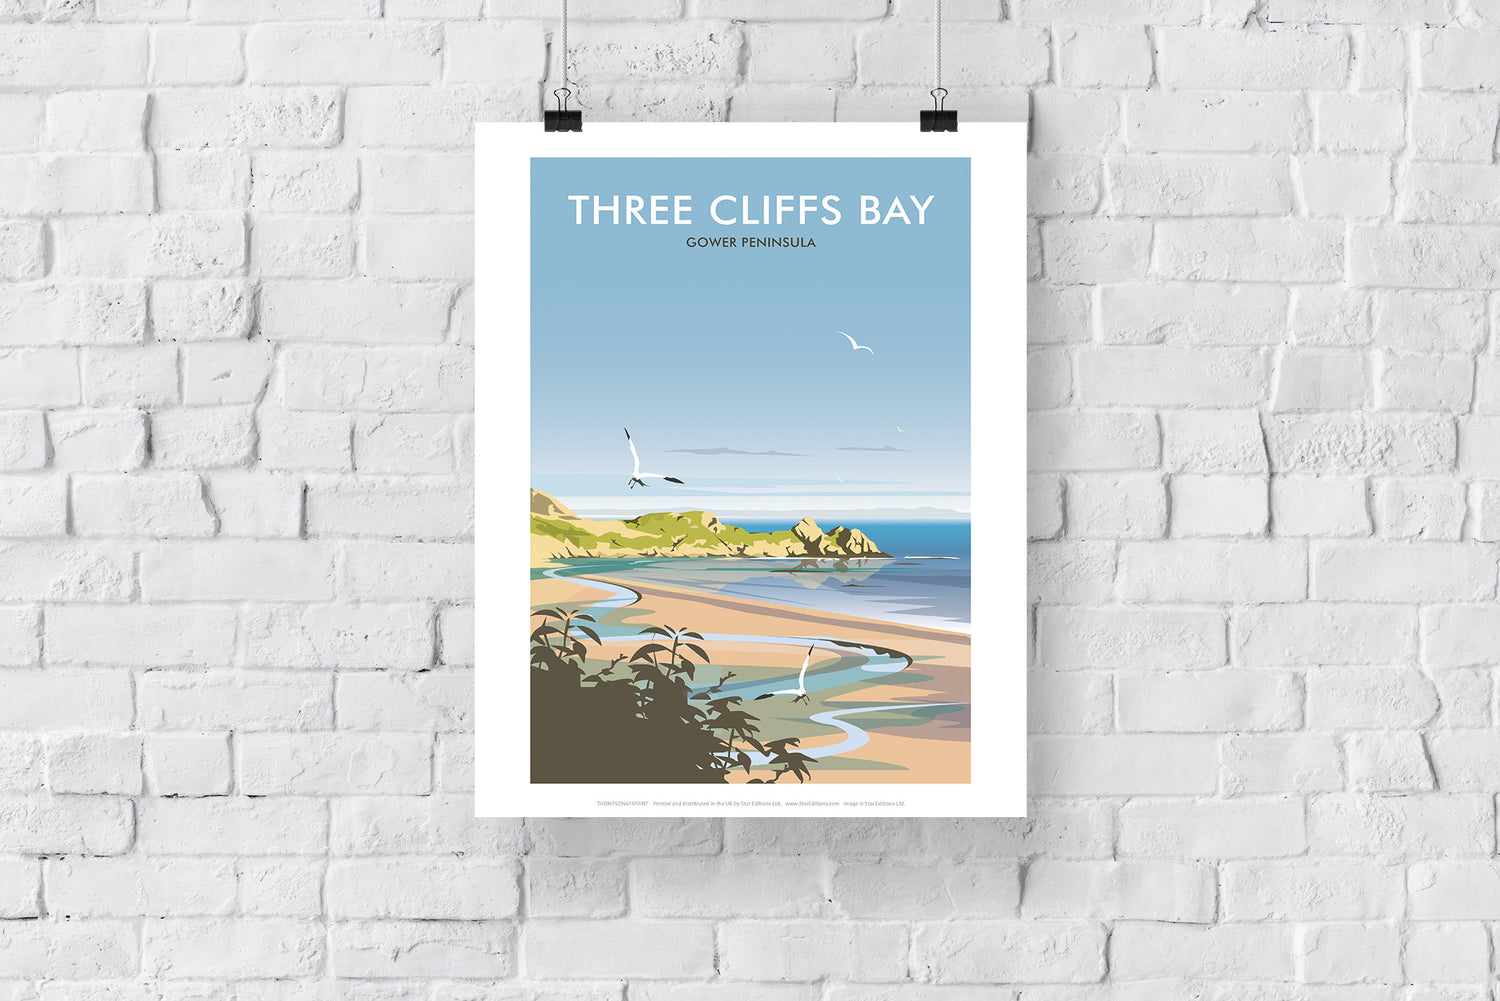 Three Cliffs Bay, Wales - Art Print